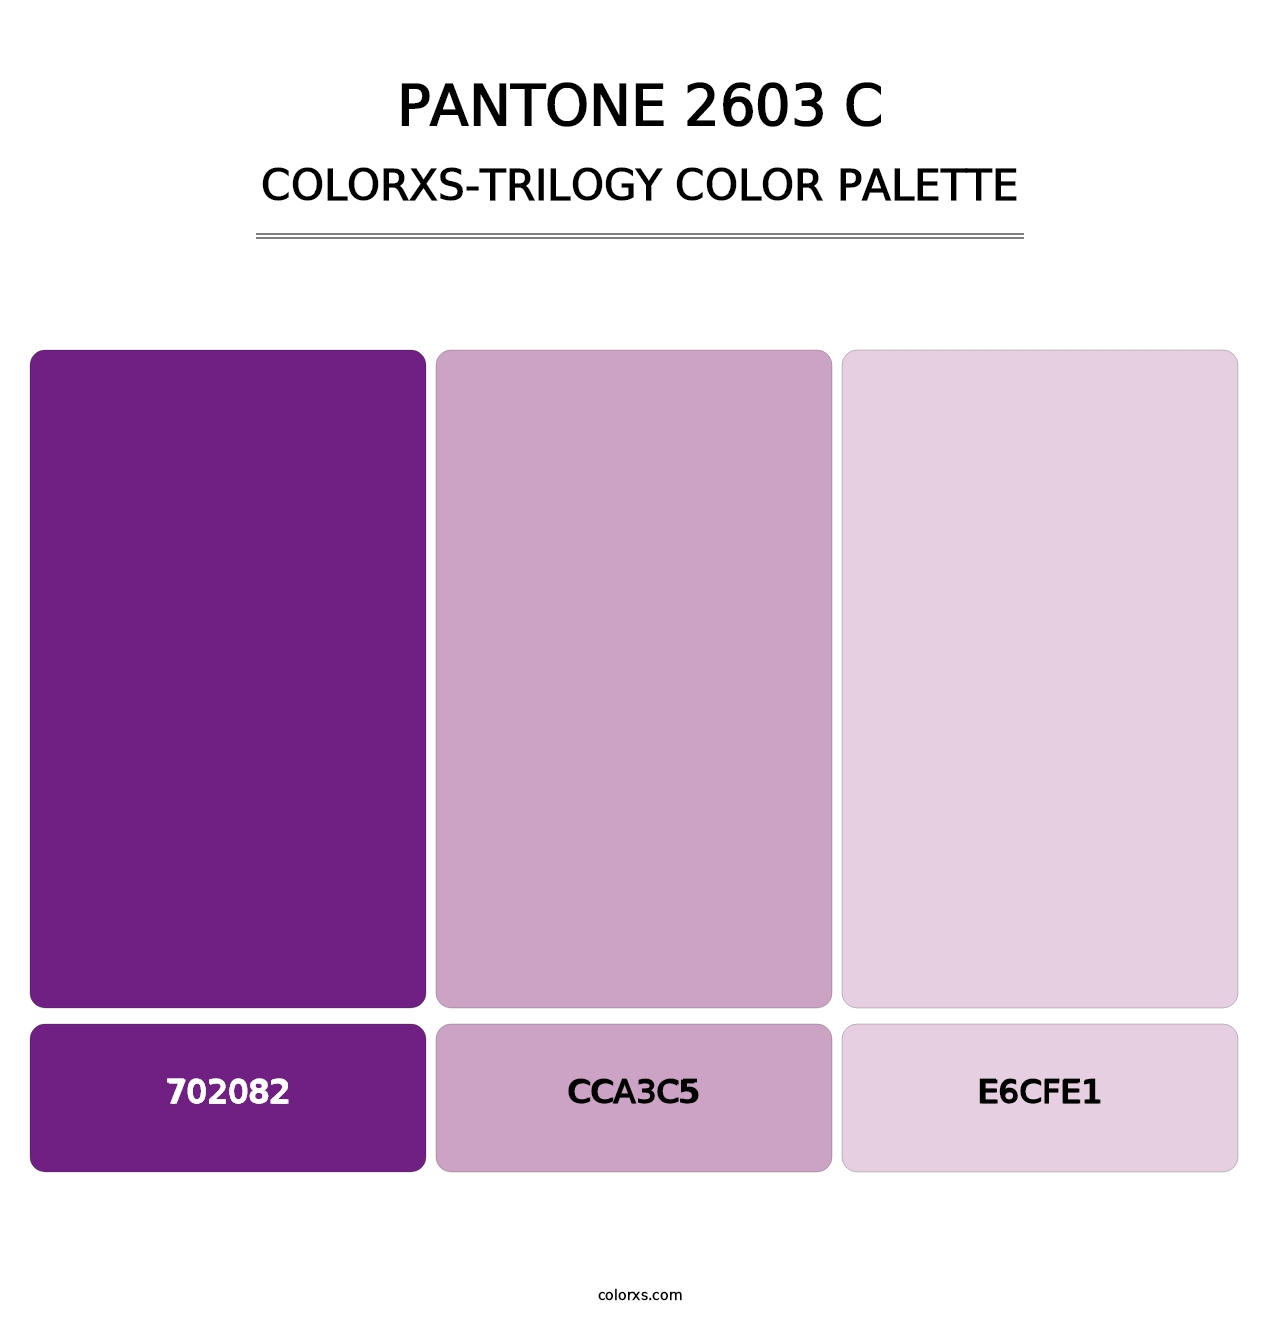 PANTONE 2603 C - Colorxs Trilogy Palette